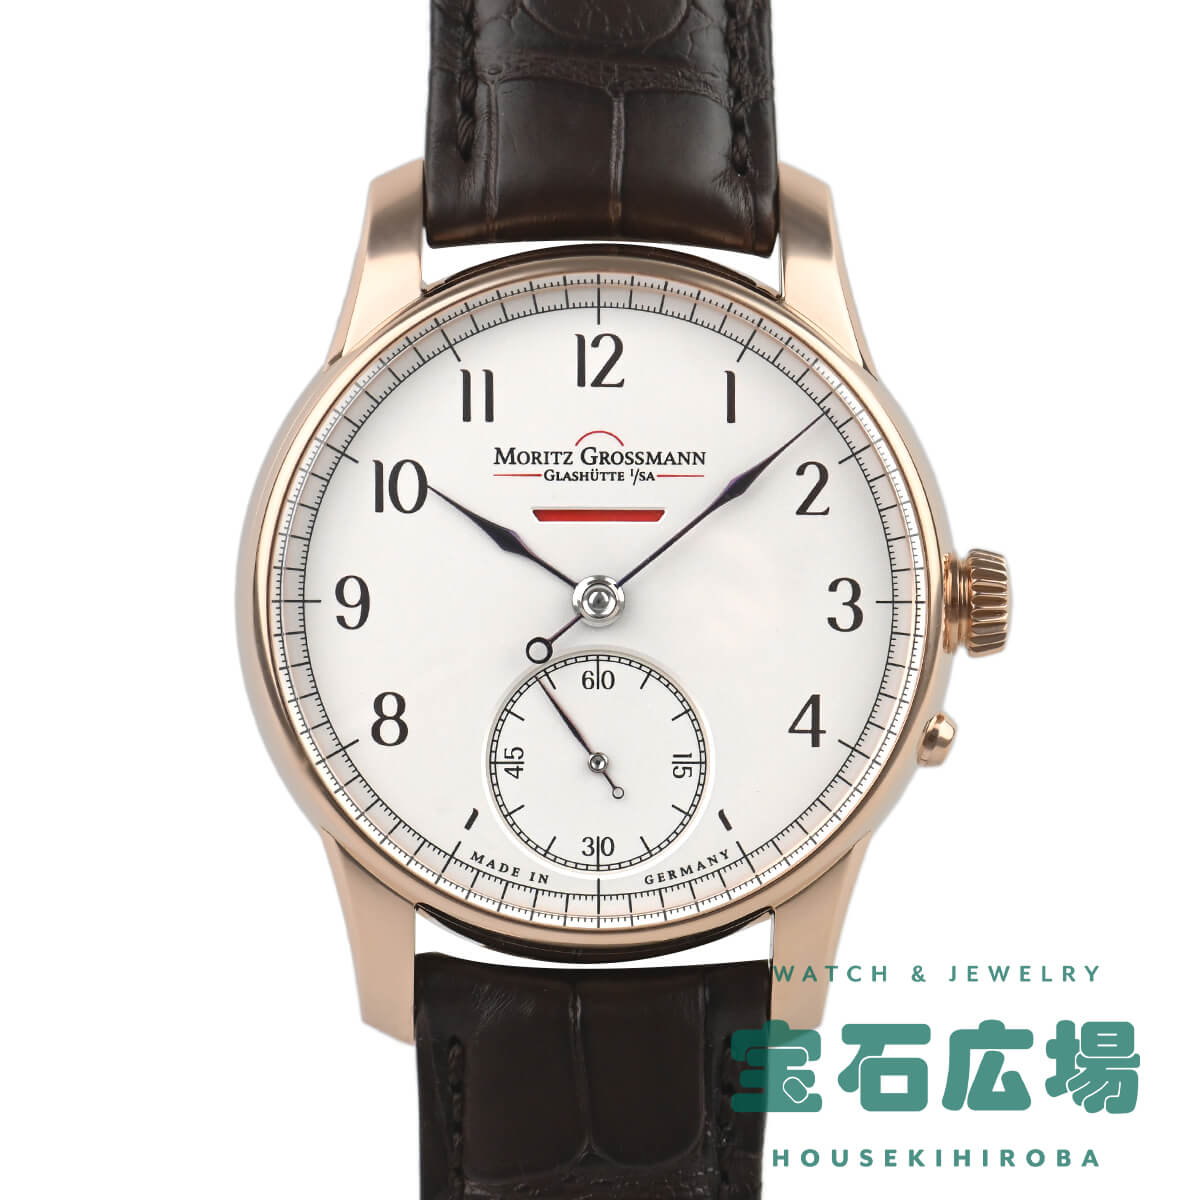 モリッツ・グロスマン MORITZ GROSSMANN ベヌーパワーリザーブ MG-000460 中古 未使用品 メンズ 腕時計